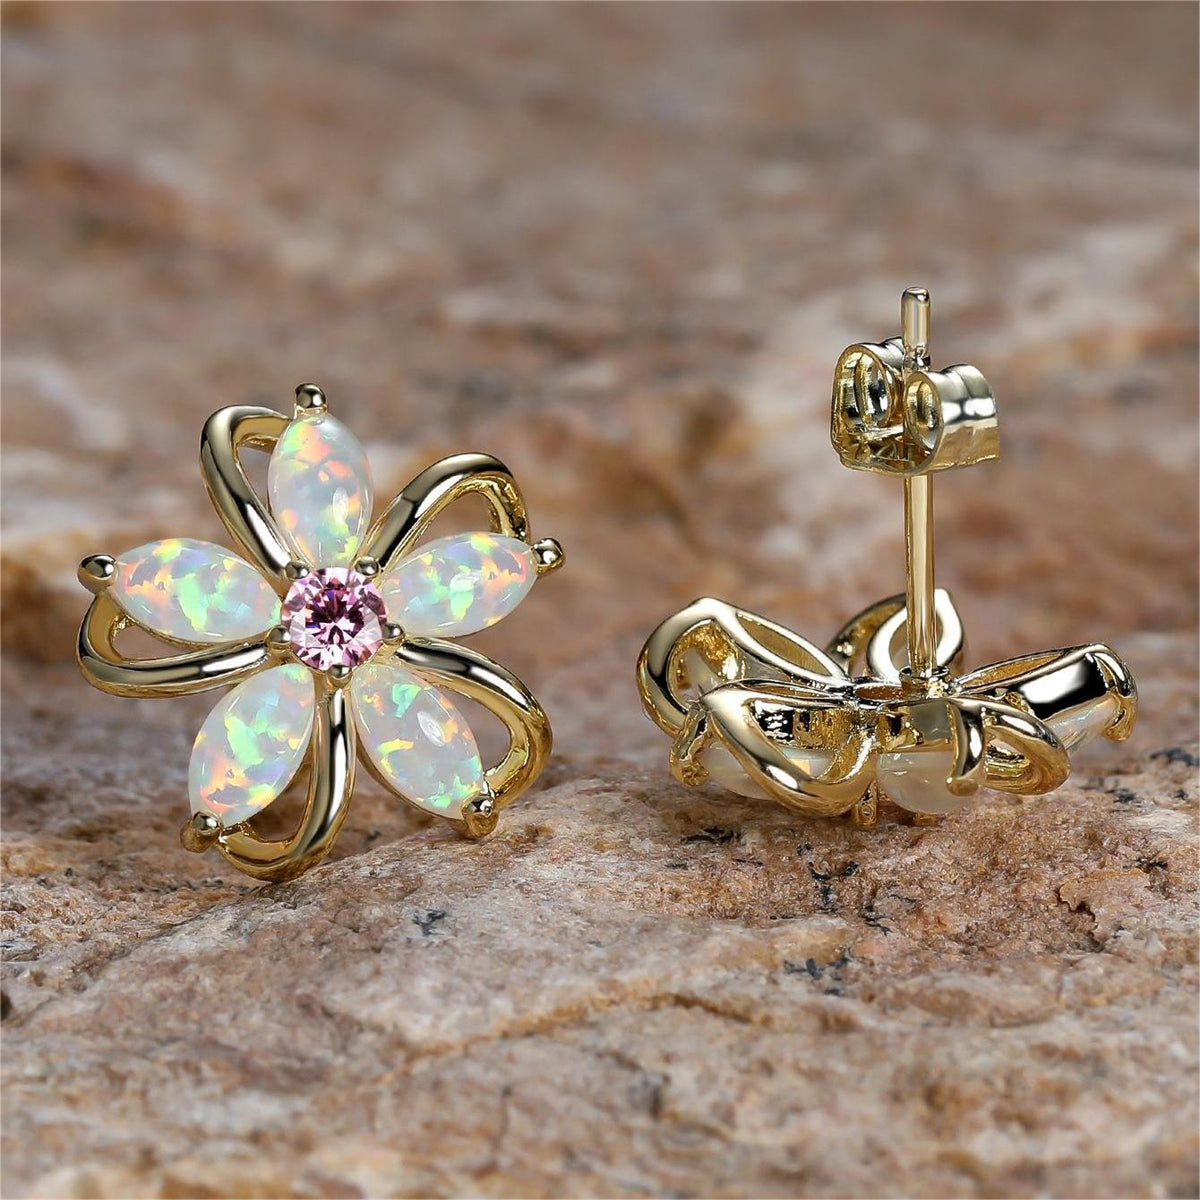 White Opal & Cubic Zirconia Flower Stud Earrings